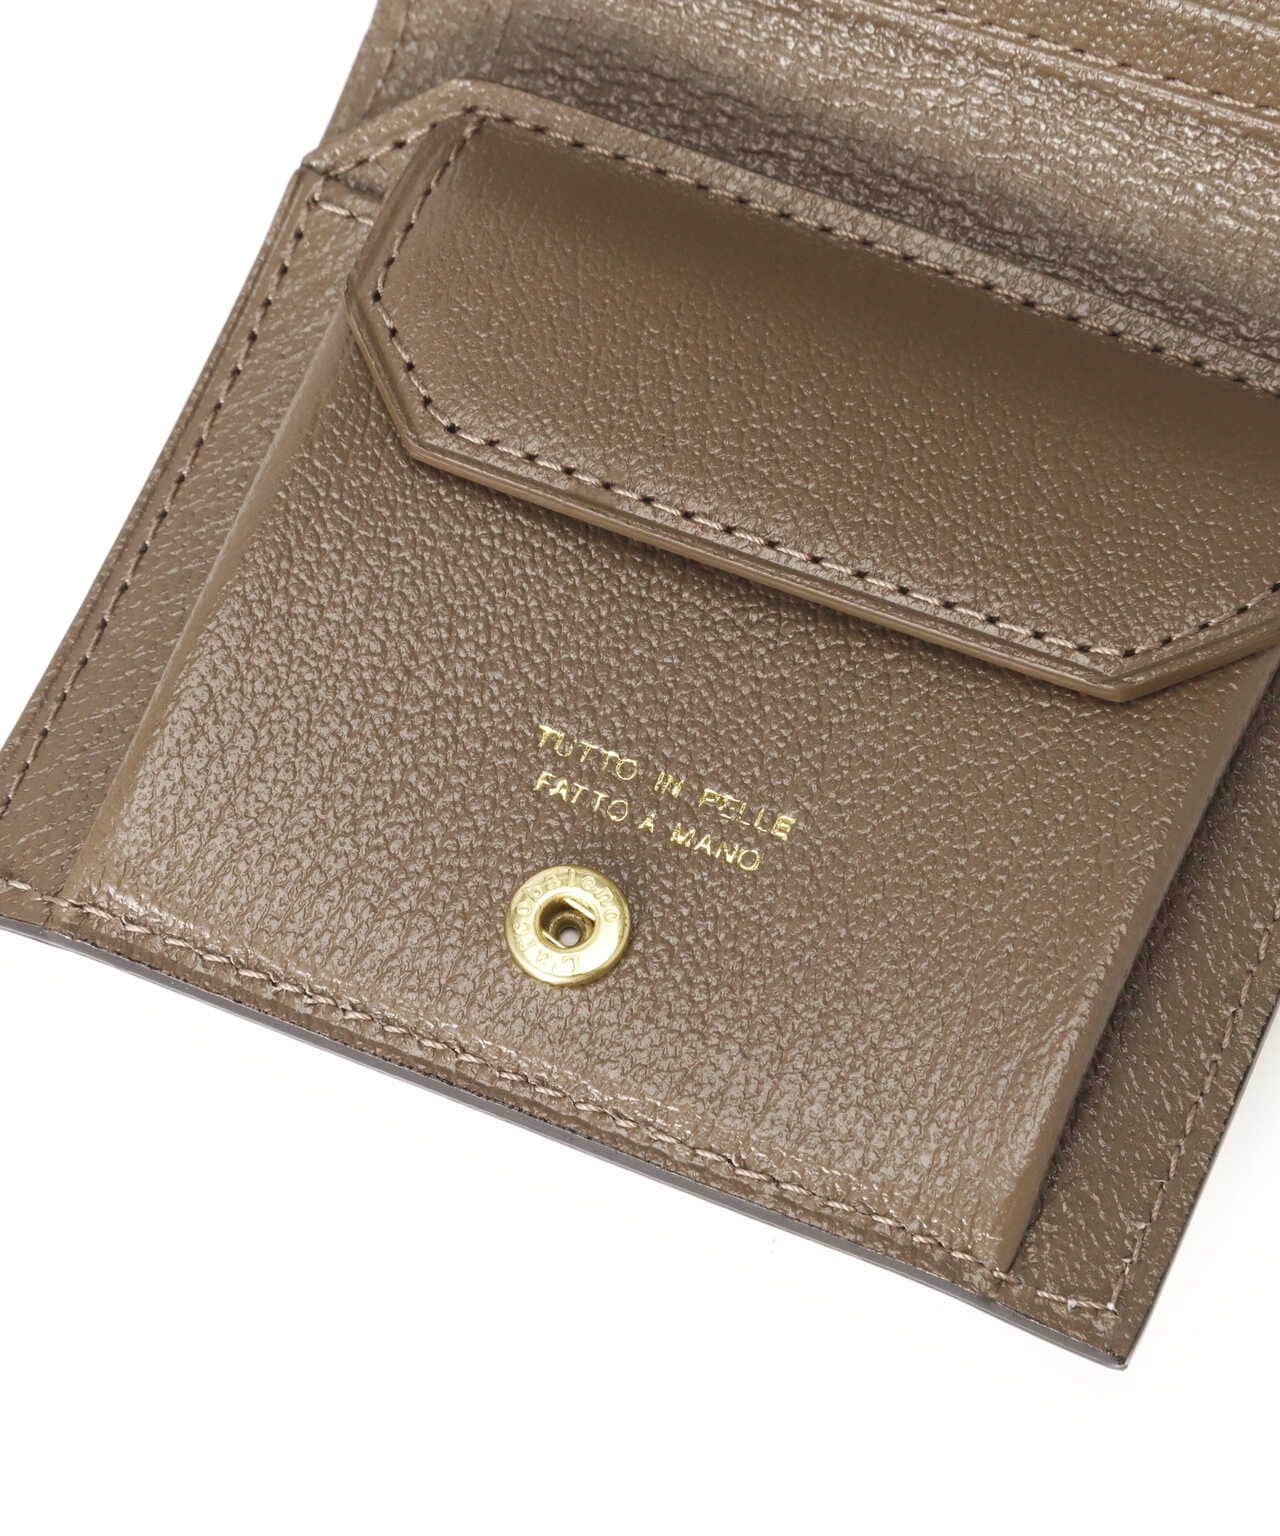 95cmタテラルコバレーノ 二つ折り財布 ウォレット レザー イタリア製